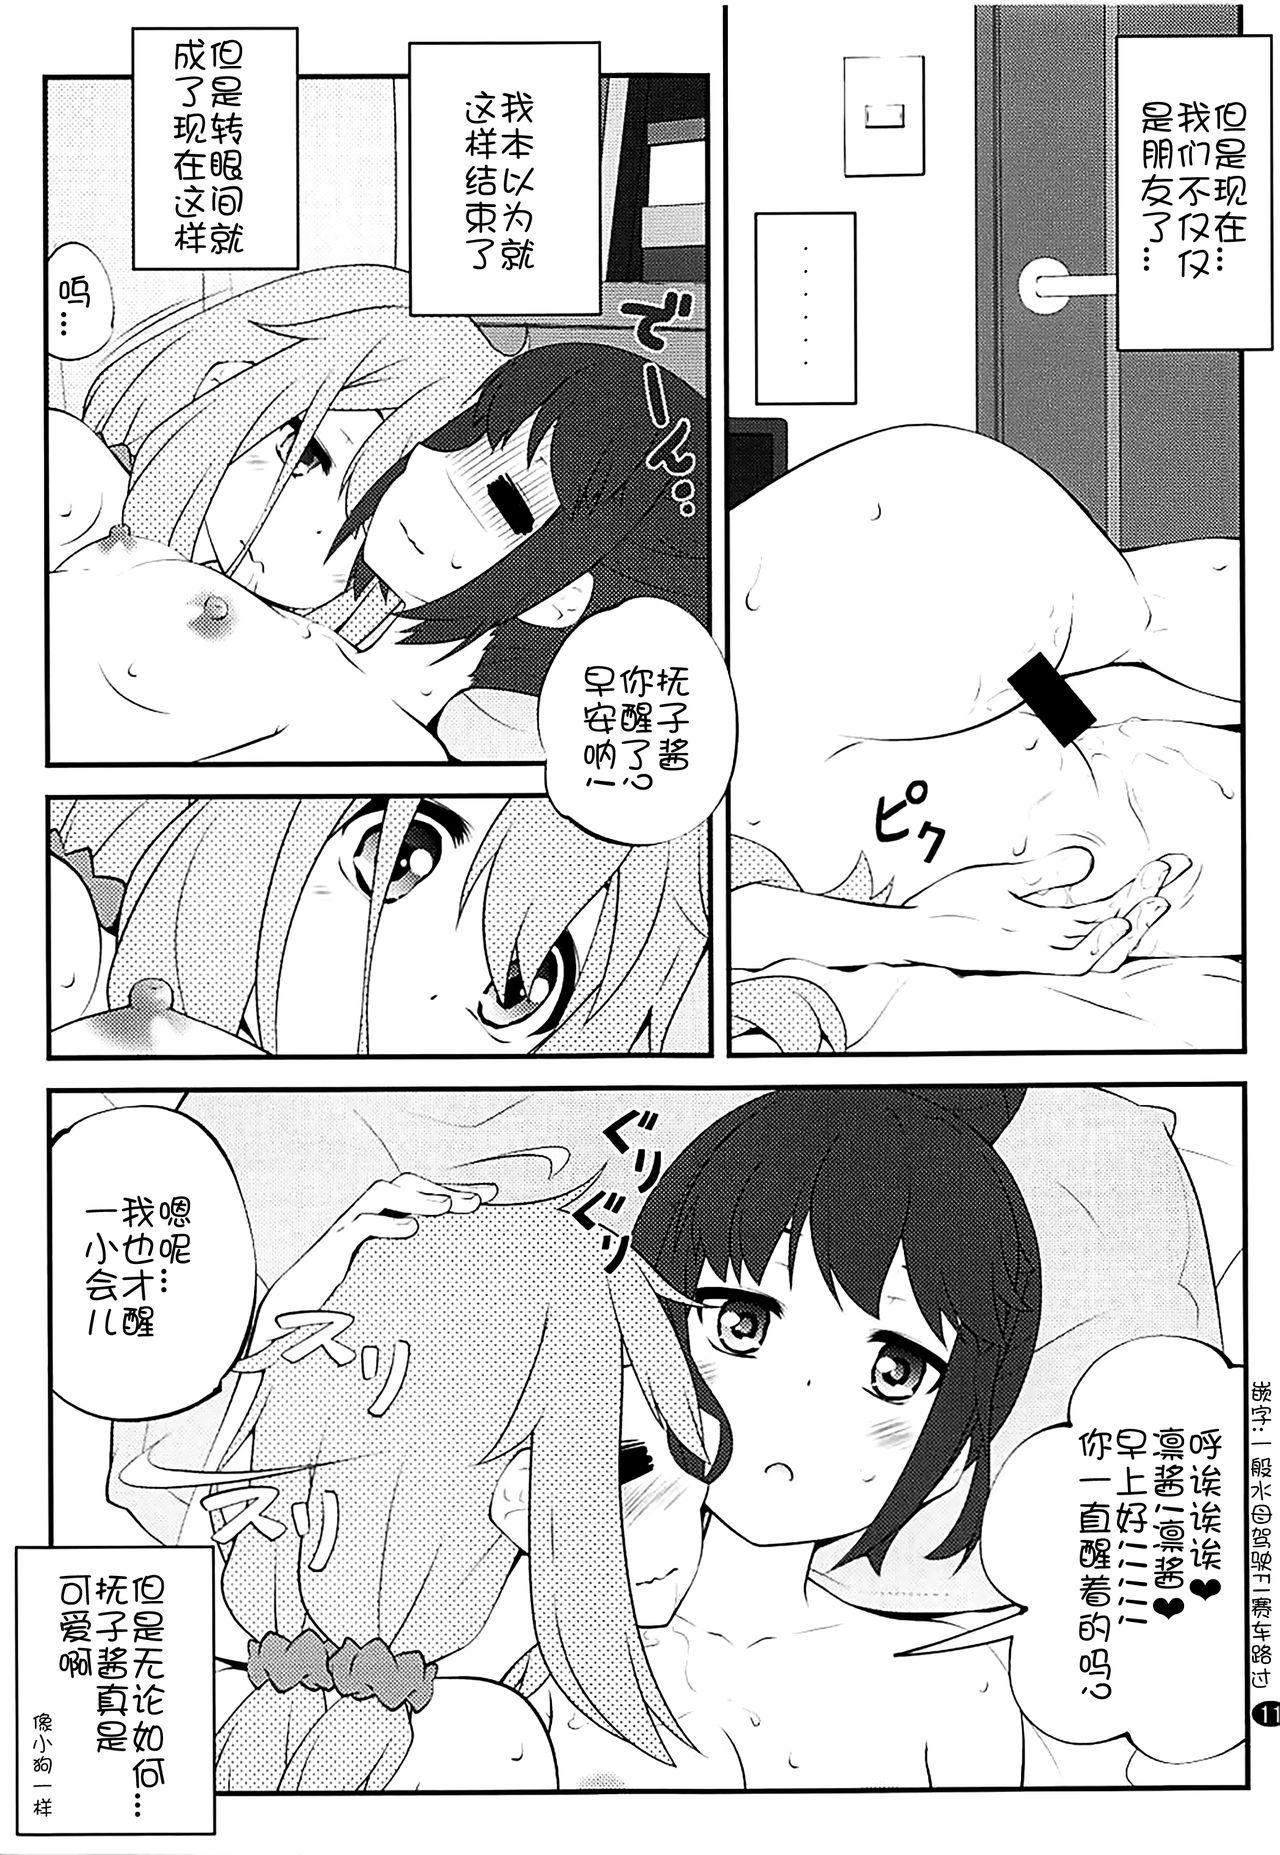 Romantic Sankakkei no, Himitsu - Yuru camp Uncensored - Page 11